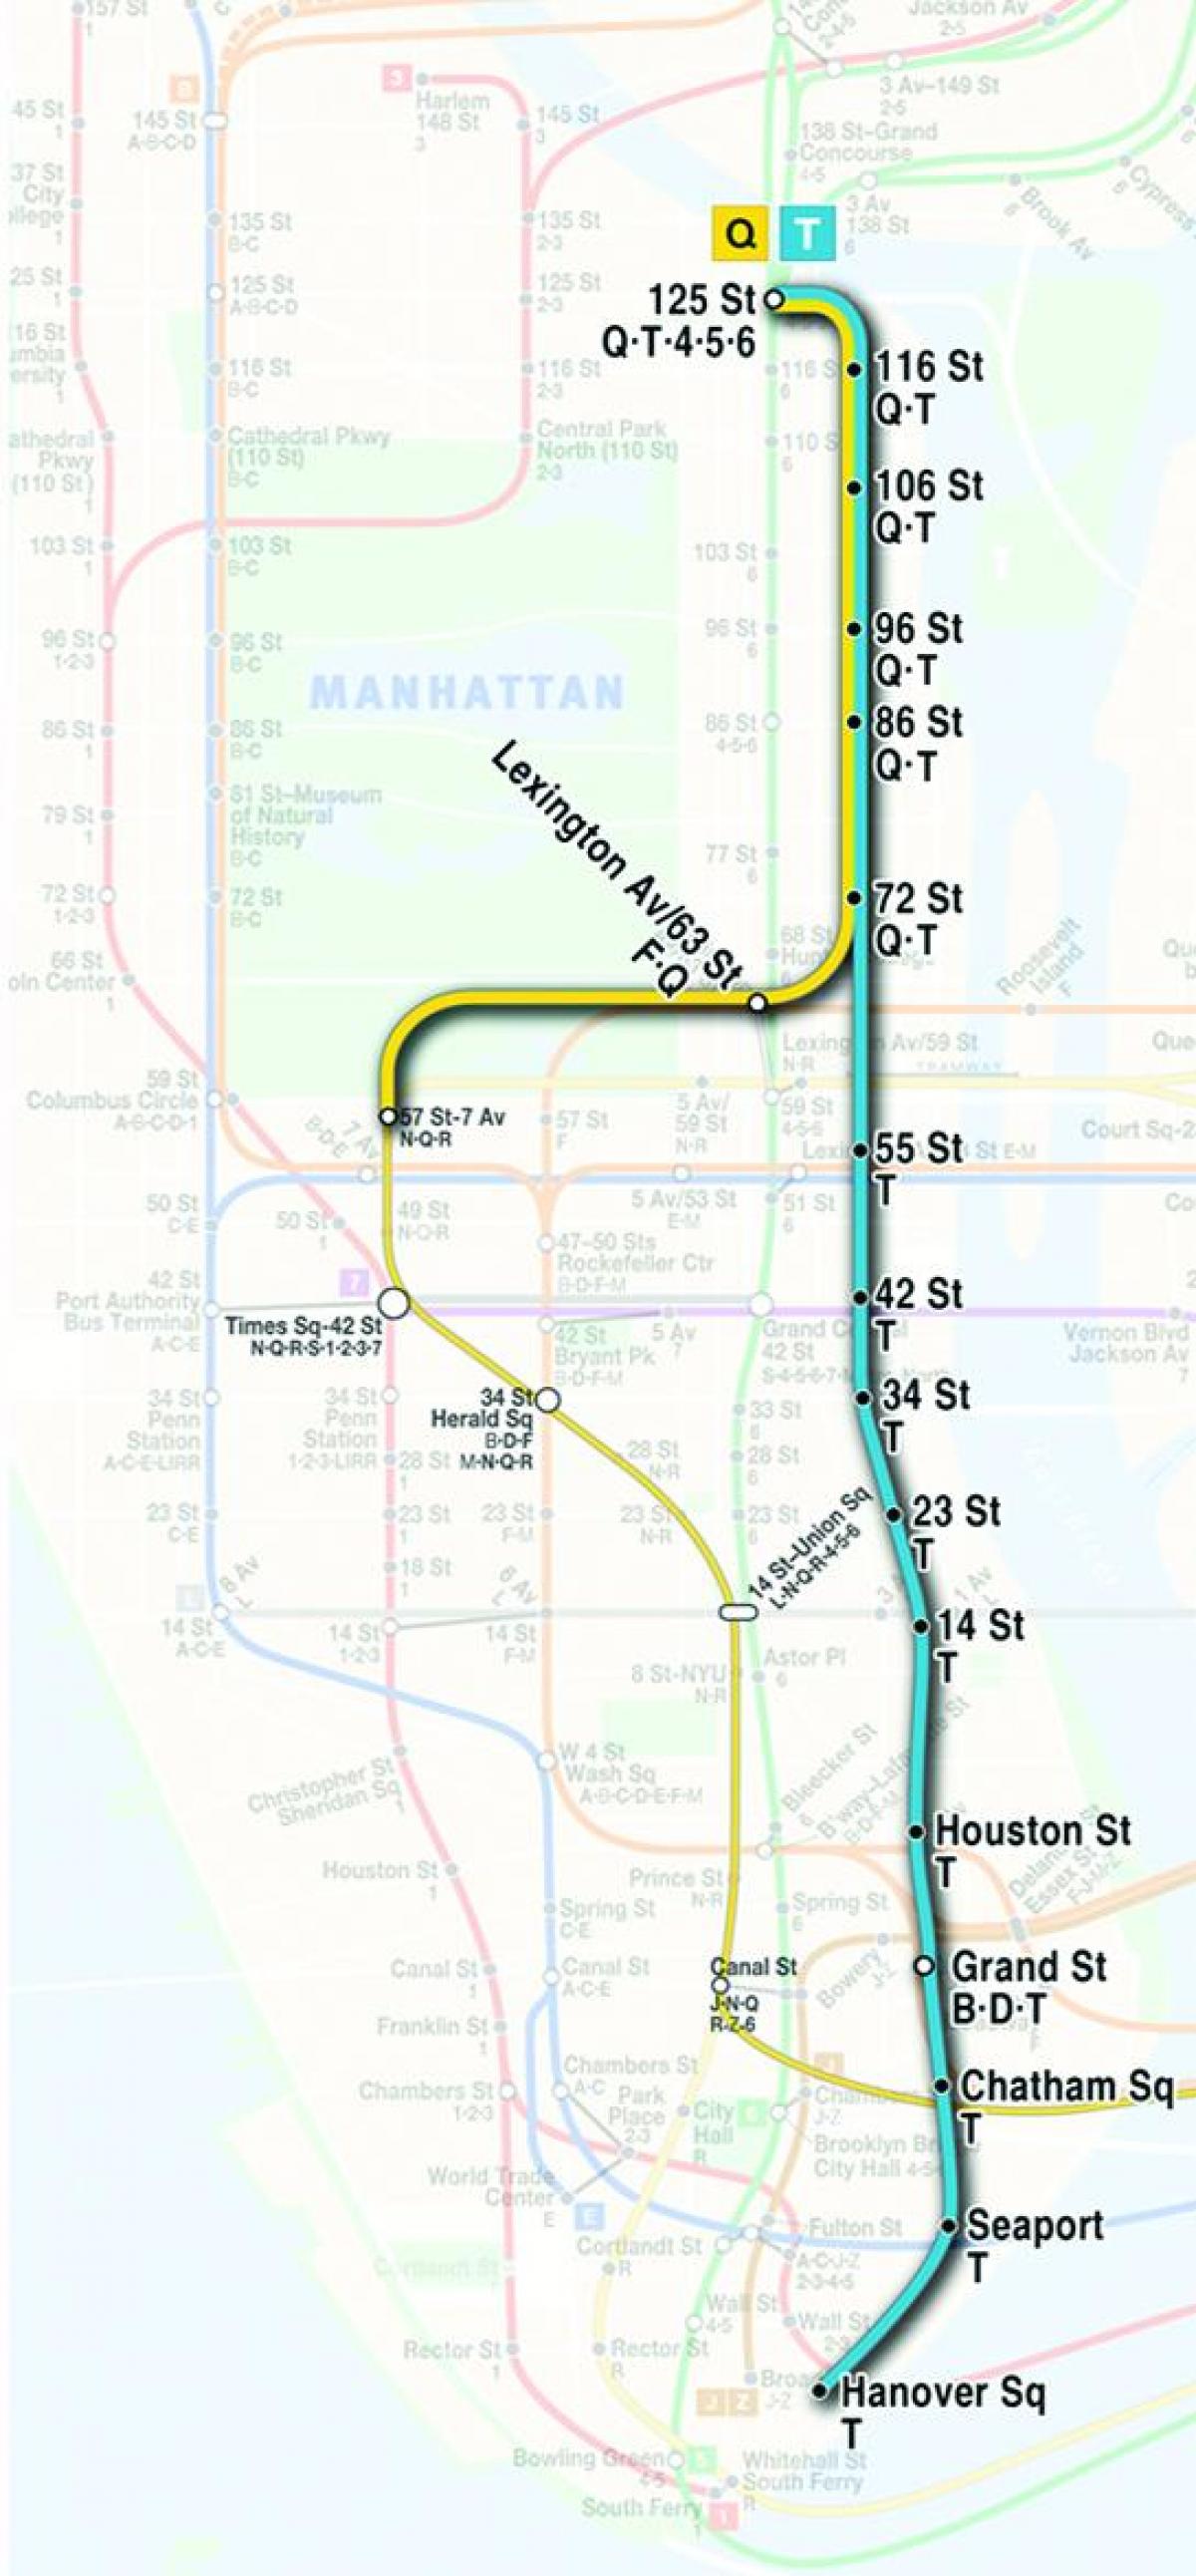 ikinci harita avenue metro